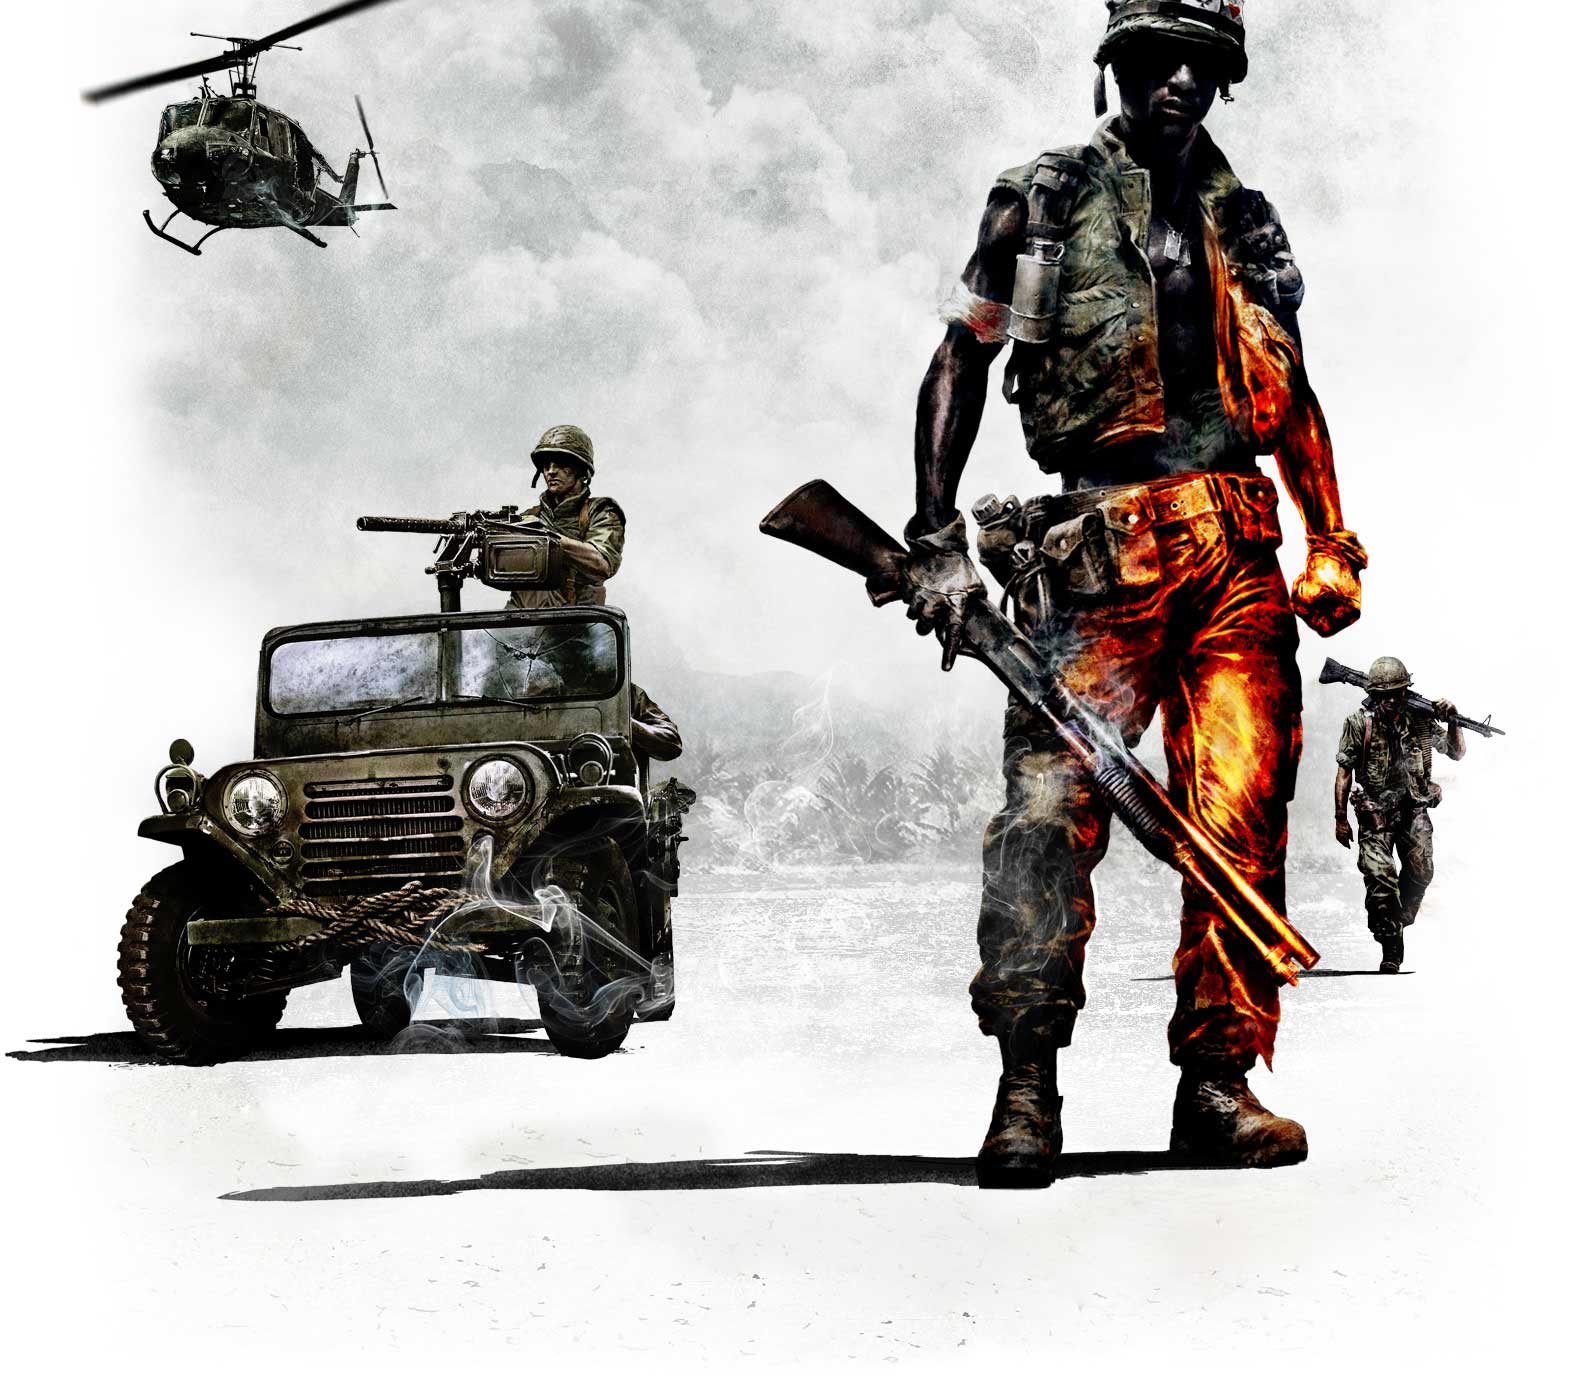 Free HQ Battlefield Bad Company 2 Vietnam Wallpaper - Free HQ ...